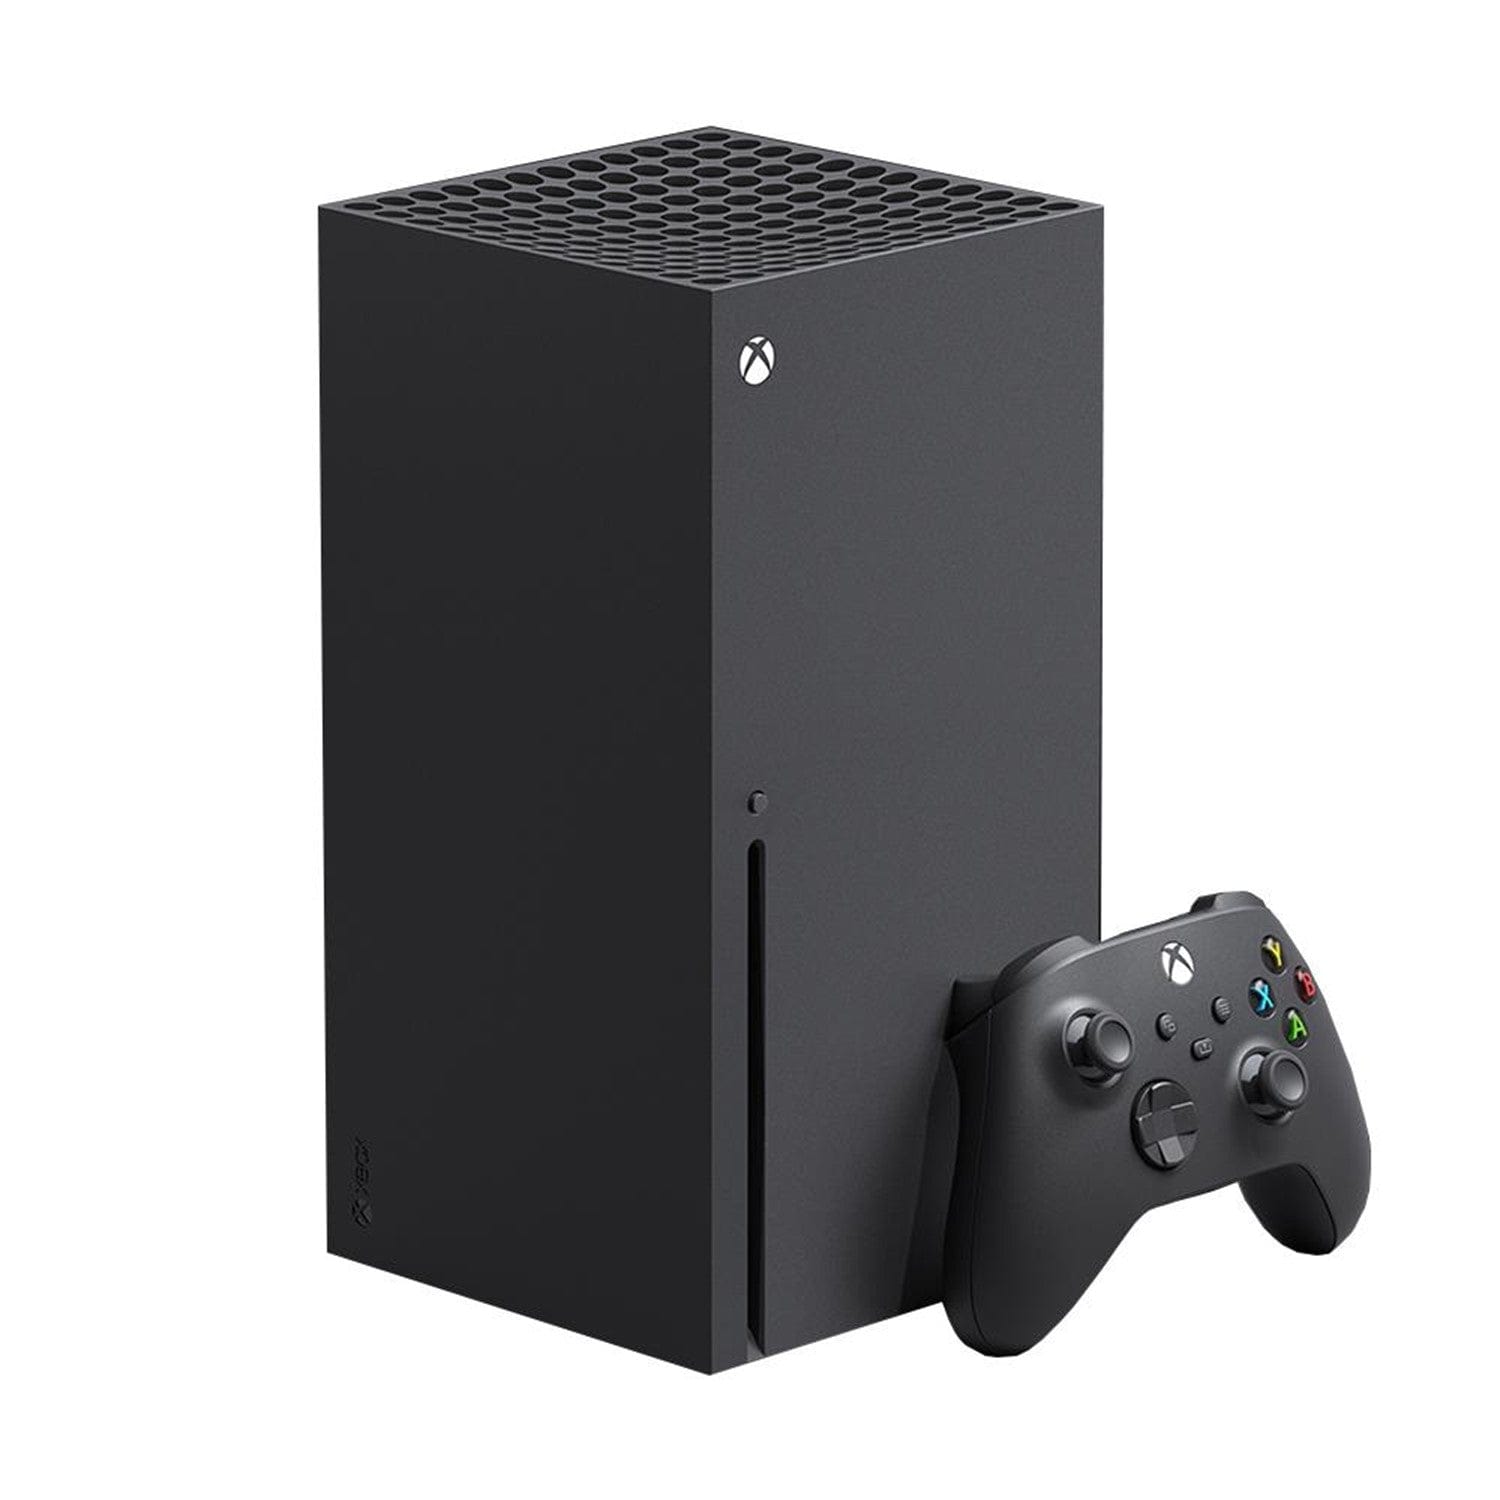 Xbox Series X Console (1TB)